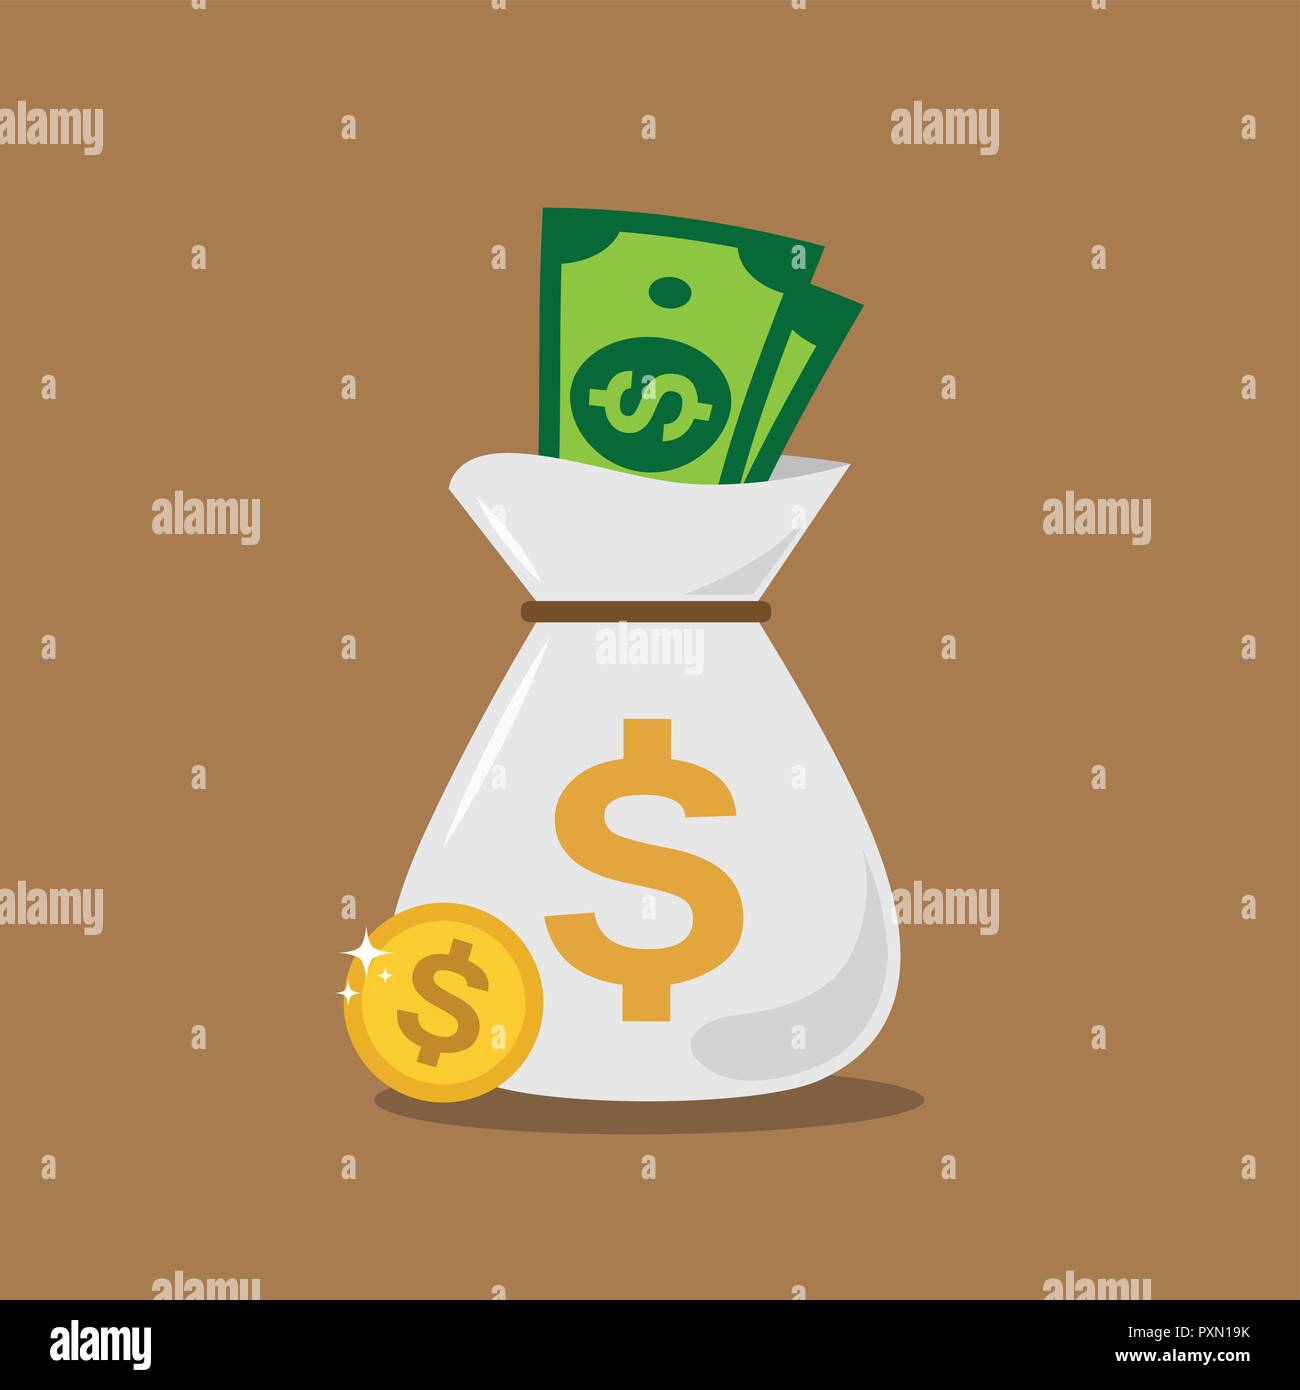 Money bag illustration in vectors. Stock Vector